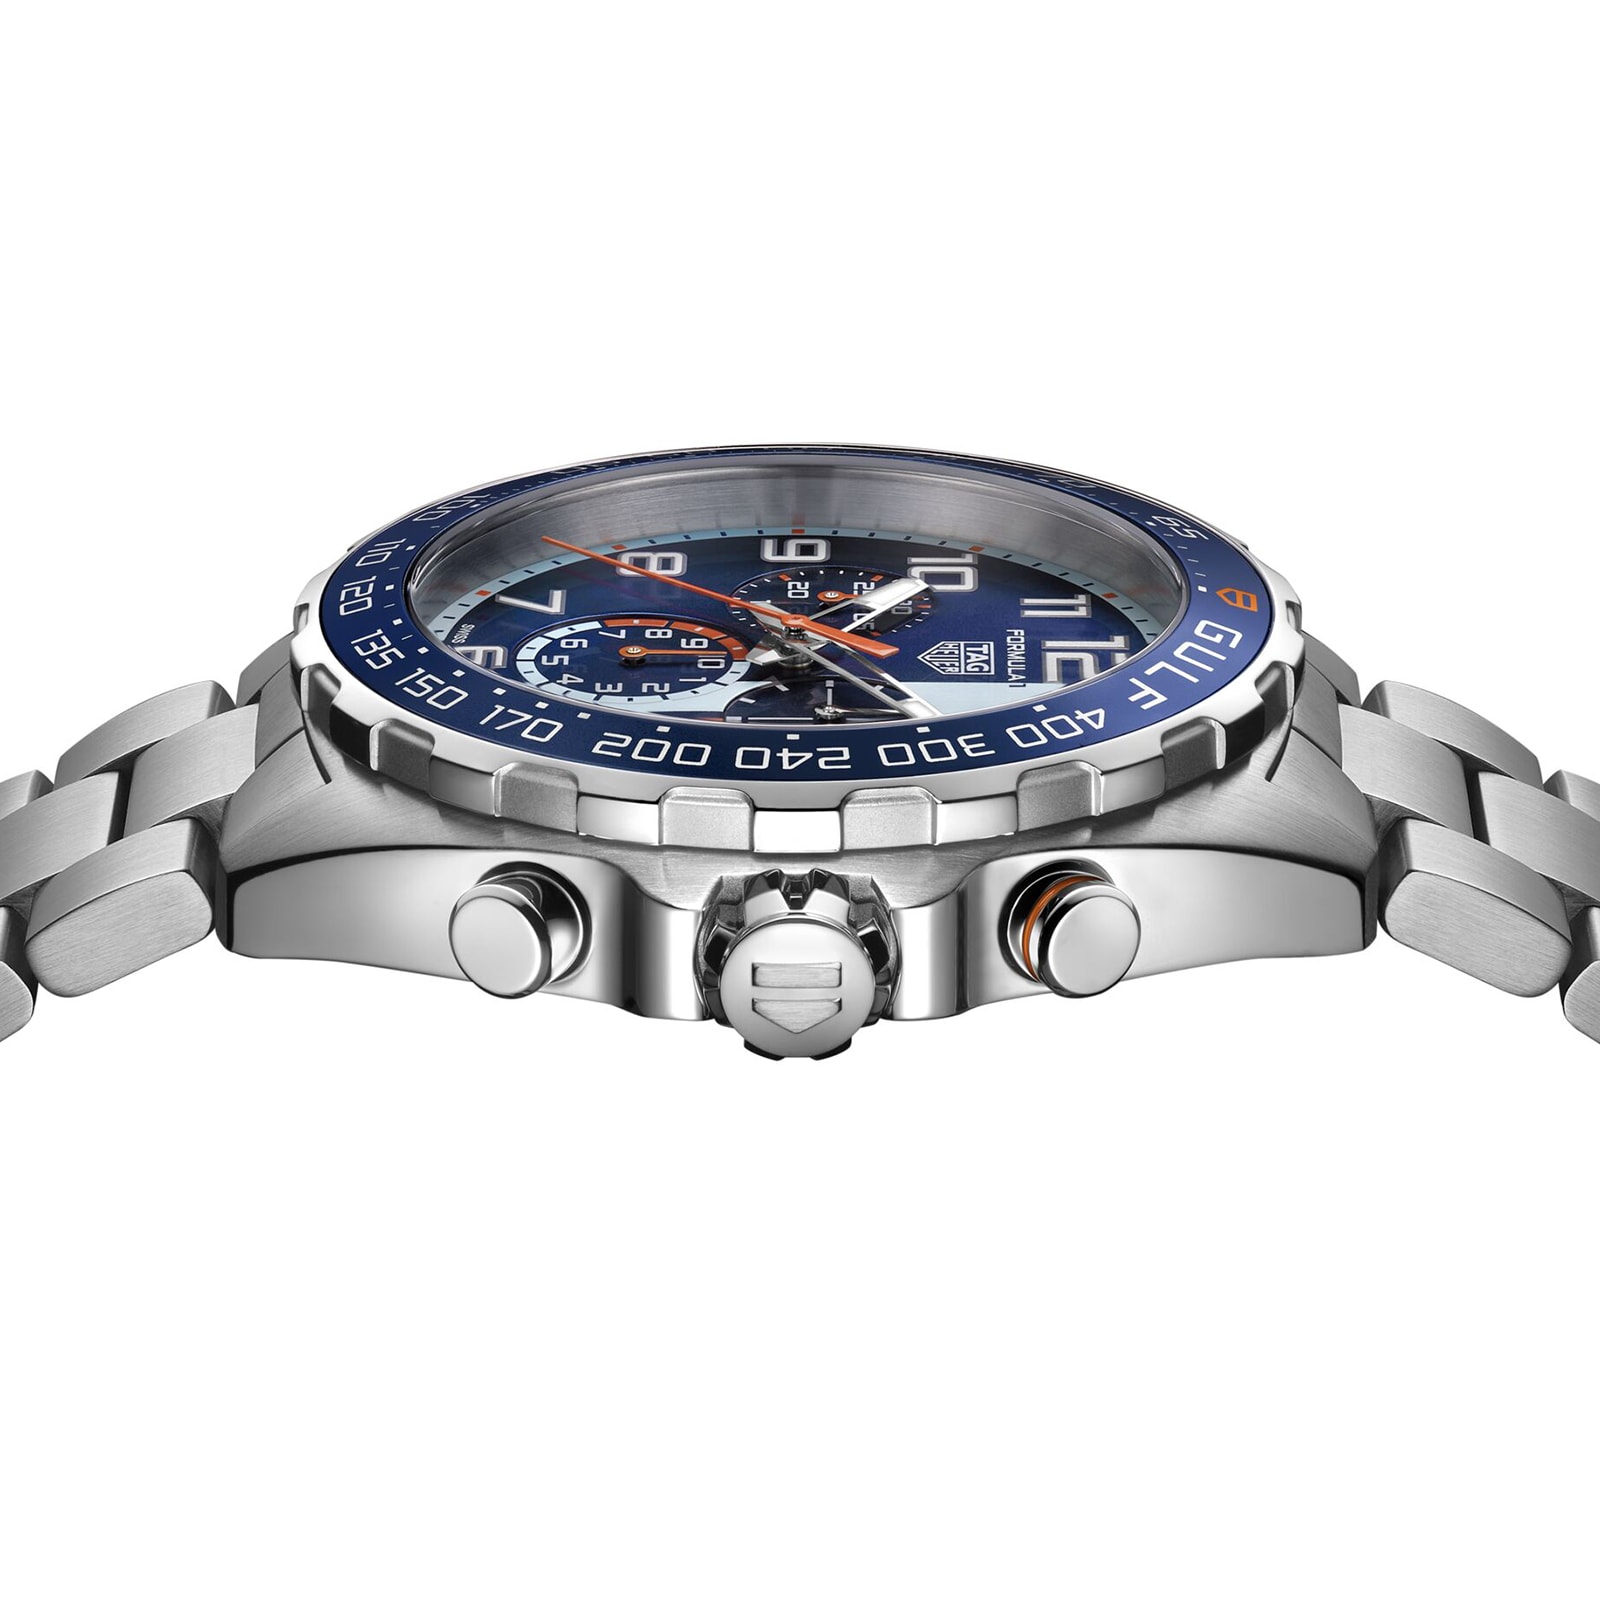 Tag Heuer Monaco Gulf Edition - Edinburgh Watch Company